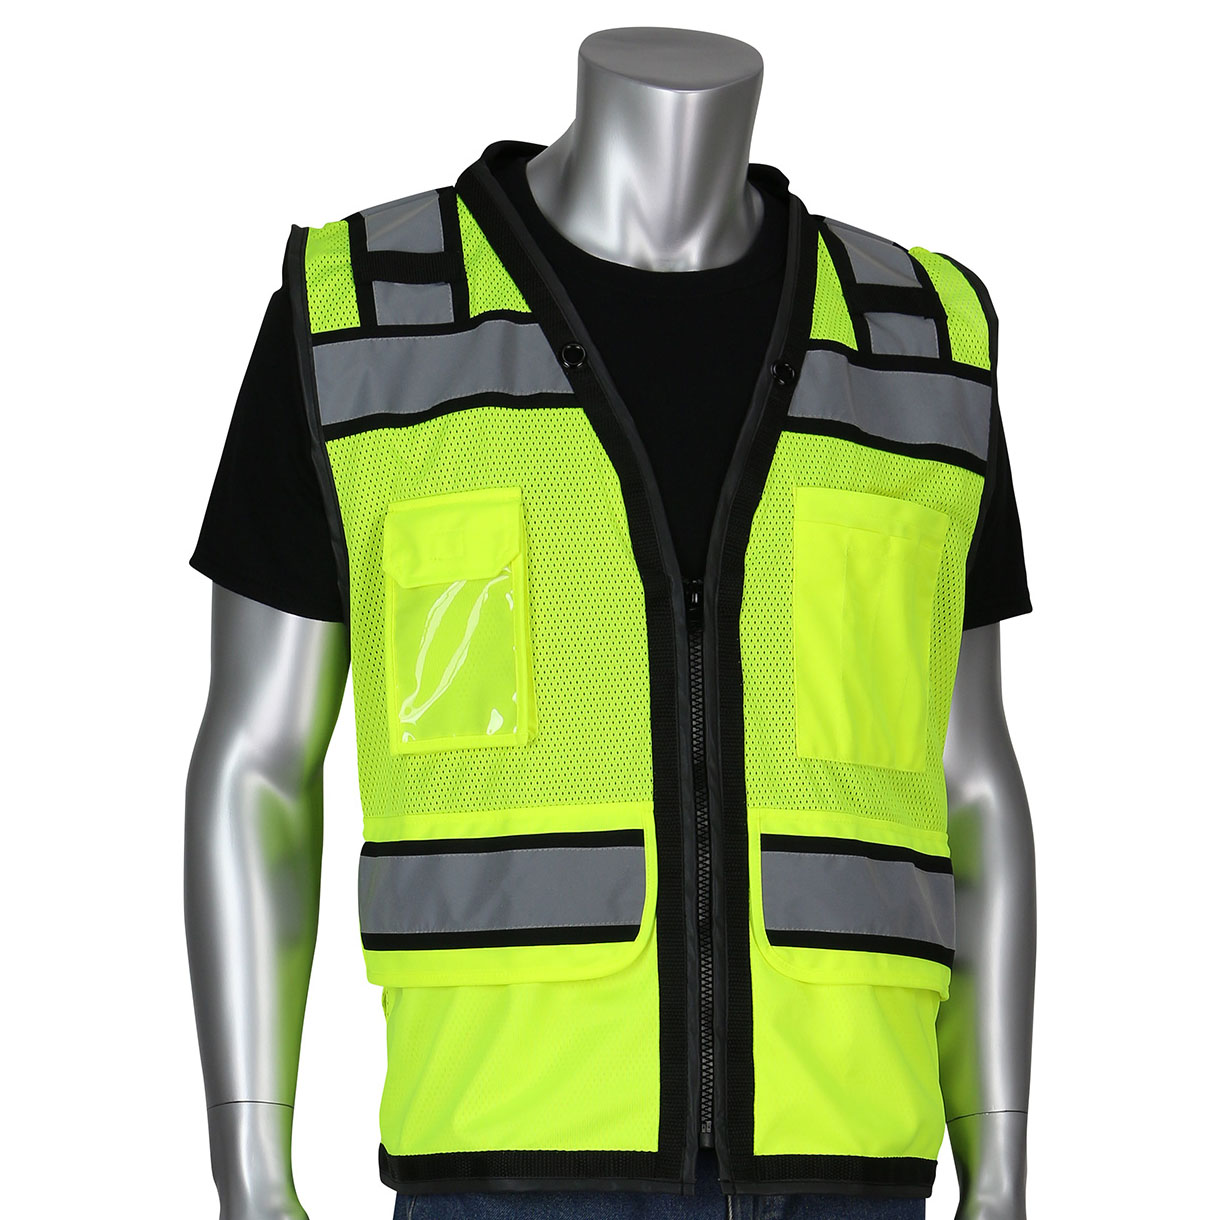 REGISTERED NURSE Traffic Safety Vest - ANSI 207-2006 Compliant